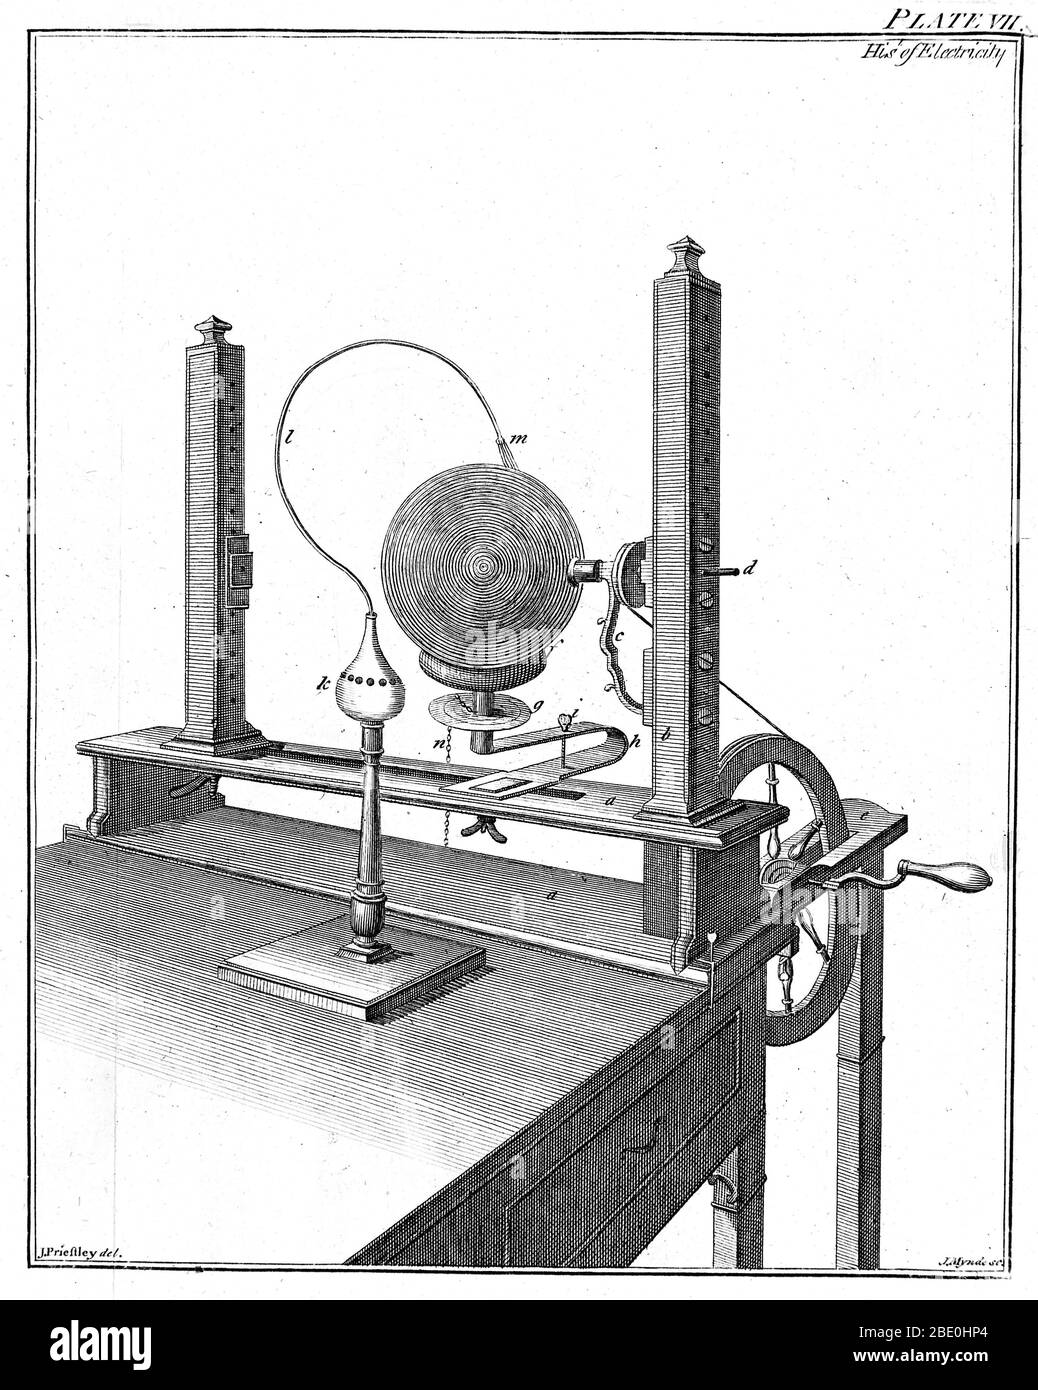 Elektrostatische Maschine von Joseph Priestley, 1775. Die Glaskugel (oben rechts) wurde durch den Griff gegen einen festen "Gummi" (wie Pelz) gedreht und die Ladung durch Drähte (oben rechts) gesammelt, die den Globus fegen. Die Spannung war bald hoch genug, um über den Spalt (oben links) zu funken. Joseph Priestley (1733-1804) war ein englischer Chemiker. Seine bekanntesten wissenschaftlichen Forschungen waren über die Natur und Eigenschaften von Gasen. Durch kluges Design von Apparaten und sorgfältige Manipulation, Priestley isoliert und charakterisiert acht Gase, einschließlich Sauerstoff, und aus dieser Arbeit entstand seine wichtigste wissenschaftliche Stockfoto